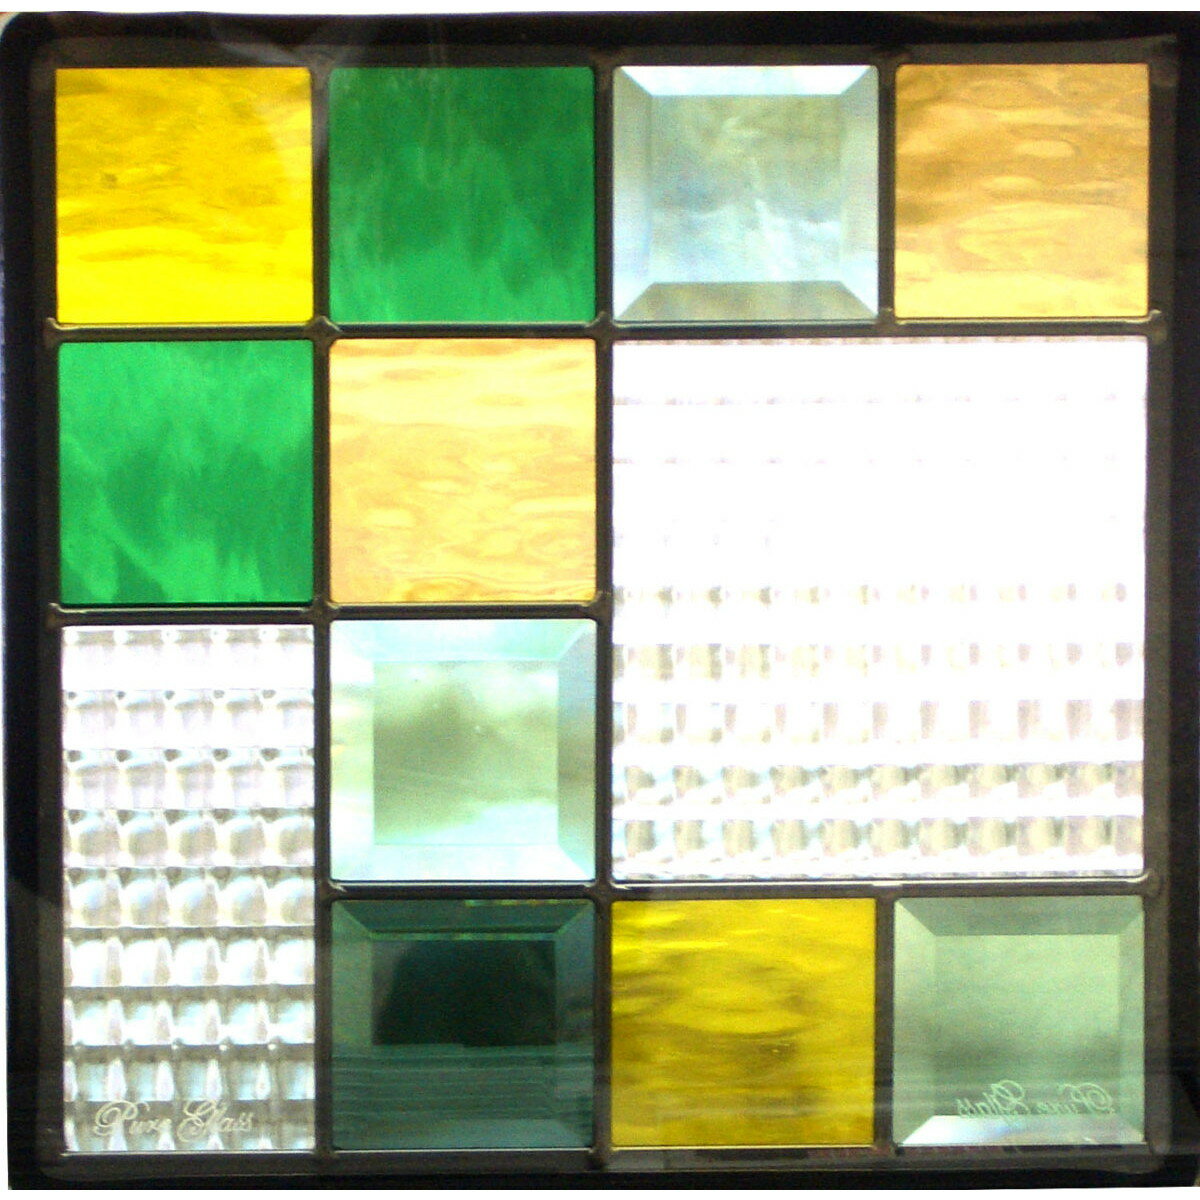 仕様商品名ステンドグラス Eサイズ SH-E04メーカーセブンホーム材質ガラス、亜鉛合金サイズW300×H300×T18mm※サイズ変更も可能です。(別途見積)　小さくされる場合には若干デザインが変わる場合があります。重量&nbsp;ケーム色ブラック備考・ステンドグラスには表面と裏面があります。商品画像の向きが表面で内部の一部のガラスは面取り(角が斜め)されております。表面と裏面では見え方が異なりますので、複数枚取付けられる場合には必ず表面・裏面を揃えて取付けてください。通常は表面を室内側にしてください。・室内での取付には専用木枠のSHF-ZE1(木目)とSHF-XE1(白)があります。(別売り)・屋外での取付には専用ステンレス枠のSHF-WD1(シルバー)と防水アルミ枠加工があります。(別売り・アルミ枠は要見積)・ハンドメイドのため、製造過程で微細な異物(埃や塵など)の混入や微小な傷が付く場合がありますが、これらはハンドメイド商品の持ち味であり、工業製品と違い職人がひとつひとつ手作業で作業した証です。商品としての不良ではありませんので、返品・交換は出来ません。・施工後、日常生活において強化ガラス部分が破損した場合、無料で代替品をお送り致します。保証期間はご購入後2年間です。※施工費などは保証対象外です。・施工後、通常の仕様においてピュアグラス内部にサビや結露が生じた場合、無料で代替品をお送り致します。保証期間はご購入後1年間です。※施工費などは保証対象外です。・運送中に破損した場合は、代替品をお届け致します。保証期間は商品到着後5日以内までのご連絡となります。・商品の色はPCと異なって見える場合があり、またPCによっても異なります。色がイメージと異なるという理由では返品は承りかねますので、予めご了承ください。配達&nbsp;送料沖縄・離島は別途送料がかかります。送料が別途かかる場合にはご注文後に追加致します。発送時期約3〜5日営業日※メーカー在庫欠品の際は、発送時期に遅れが生じますので、予めご了承ください。お急ぎのお客様は、事前にお問い合わせください。&nbsp;ステンドグラス Eサイズ SH-E04の特徴●グリーンとイエローのスクエアがリズムよく配置され、楽しげな雰囲気を作り出しています。エクステリアとして人気の一枚です。●EサイズはDサイズよりも大きな面積でガラスの表情を楽しめます。